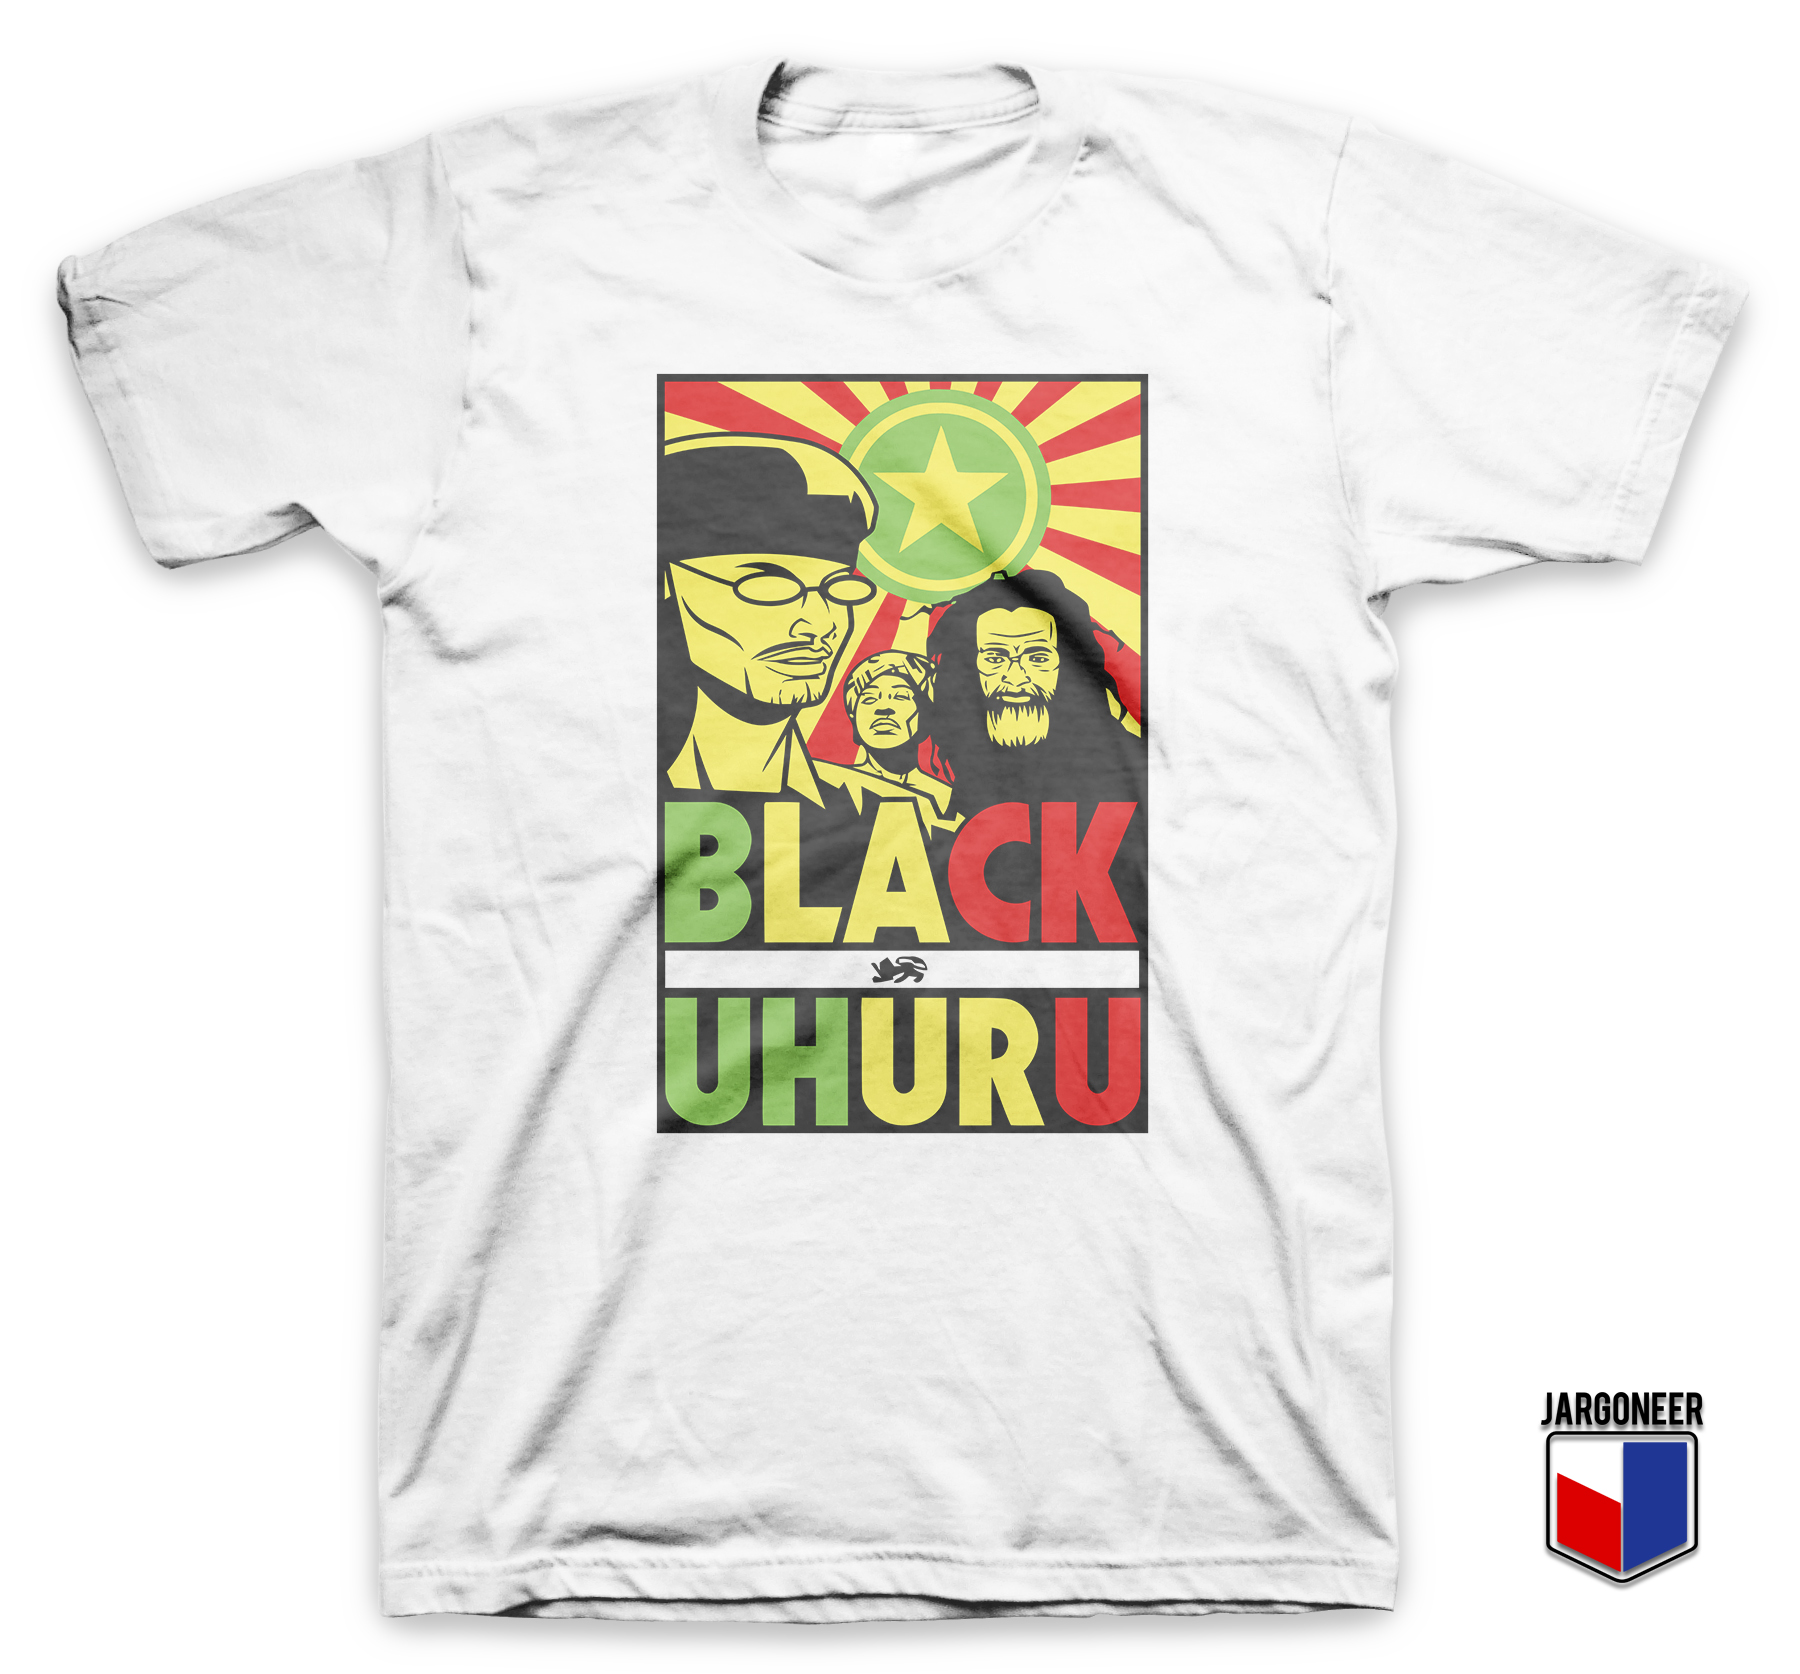 Black Uhuru White T Shirt - Shop Unique Graphic Cool Shirt Designs